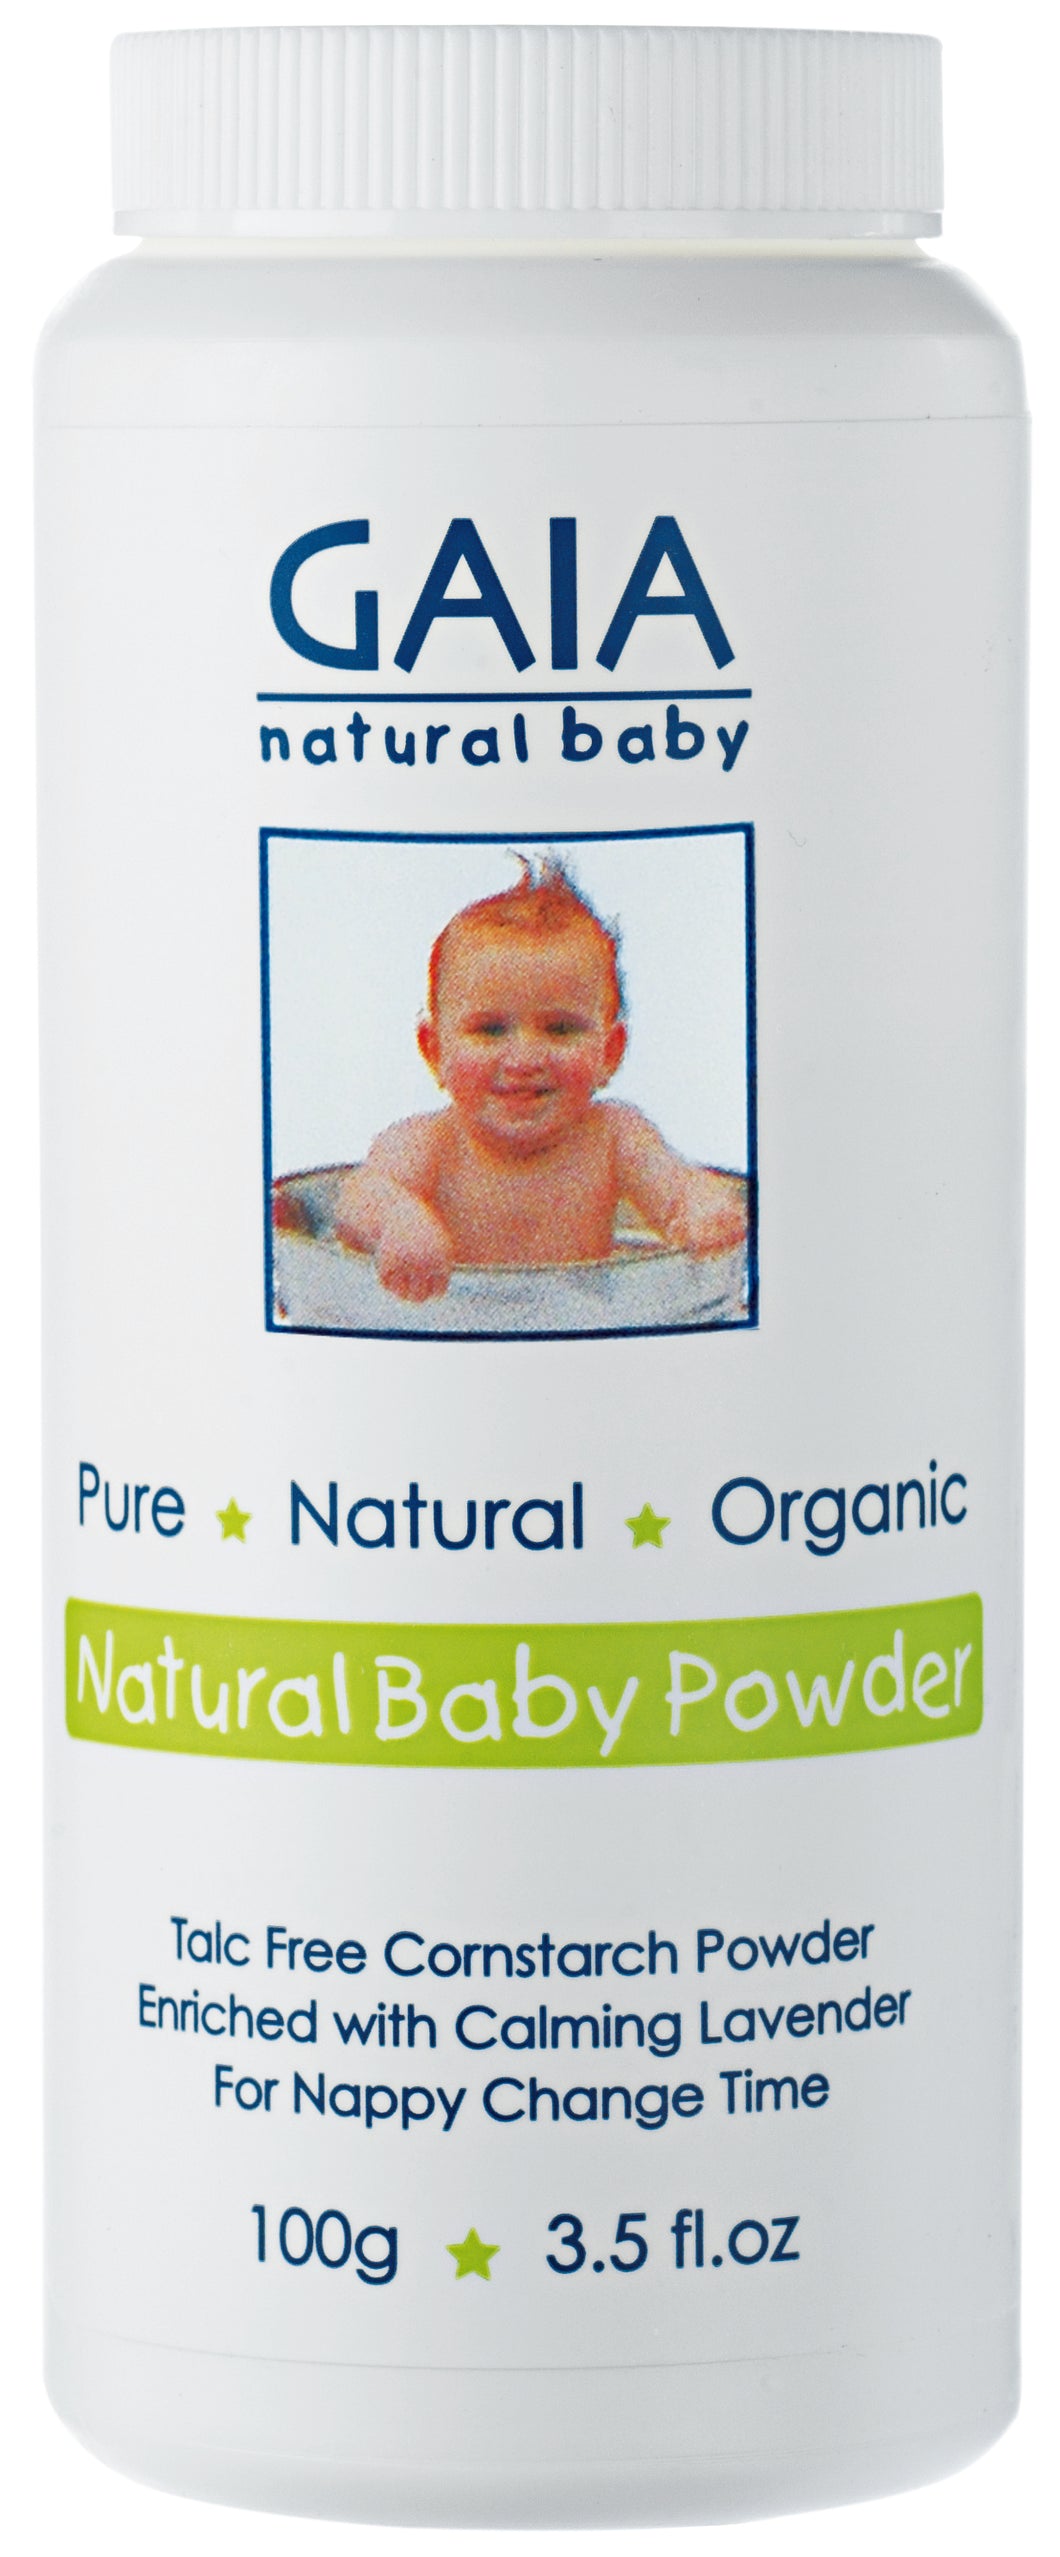 Gaia - Natural Baby Powder - 100g